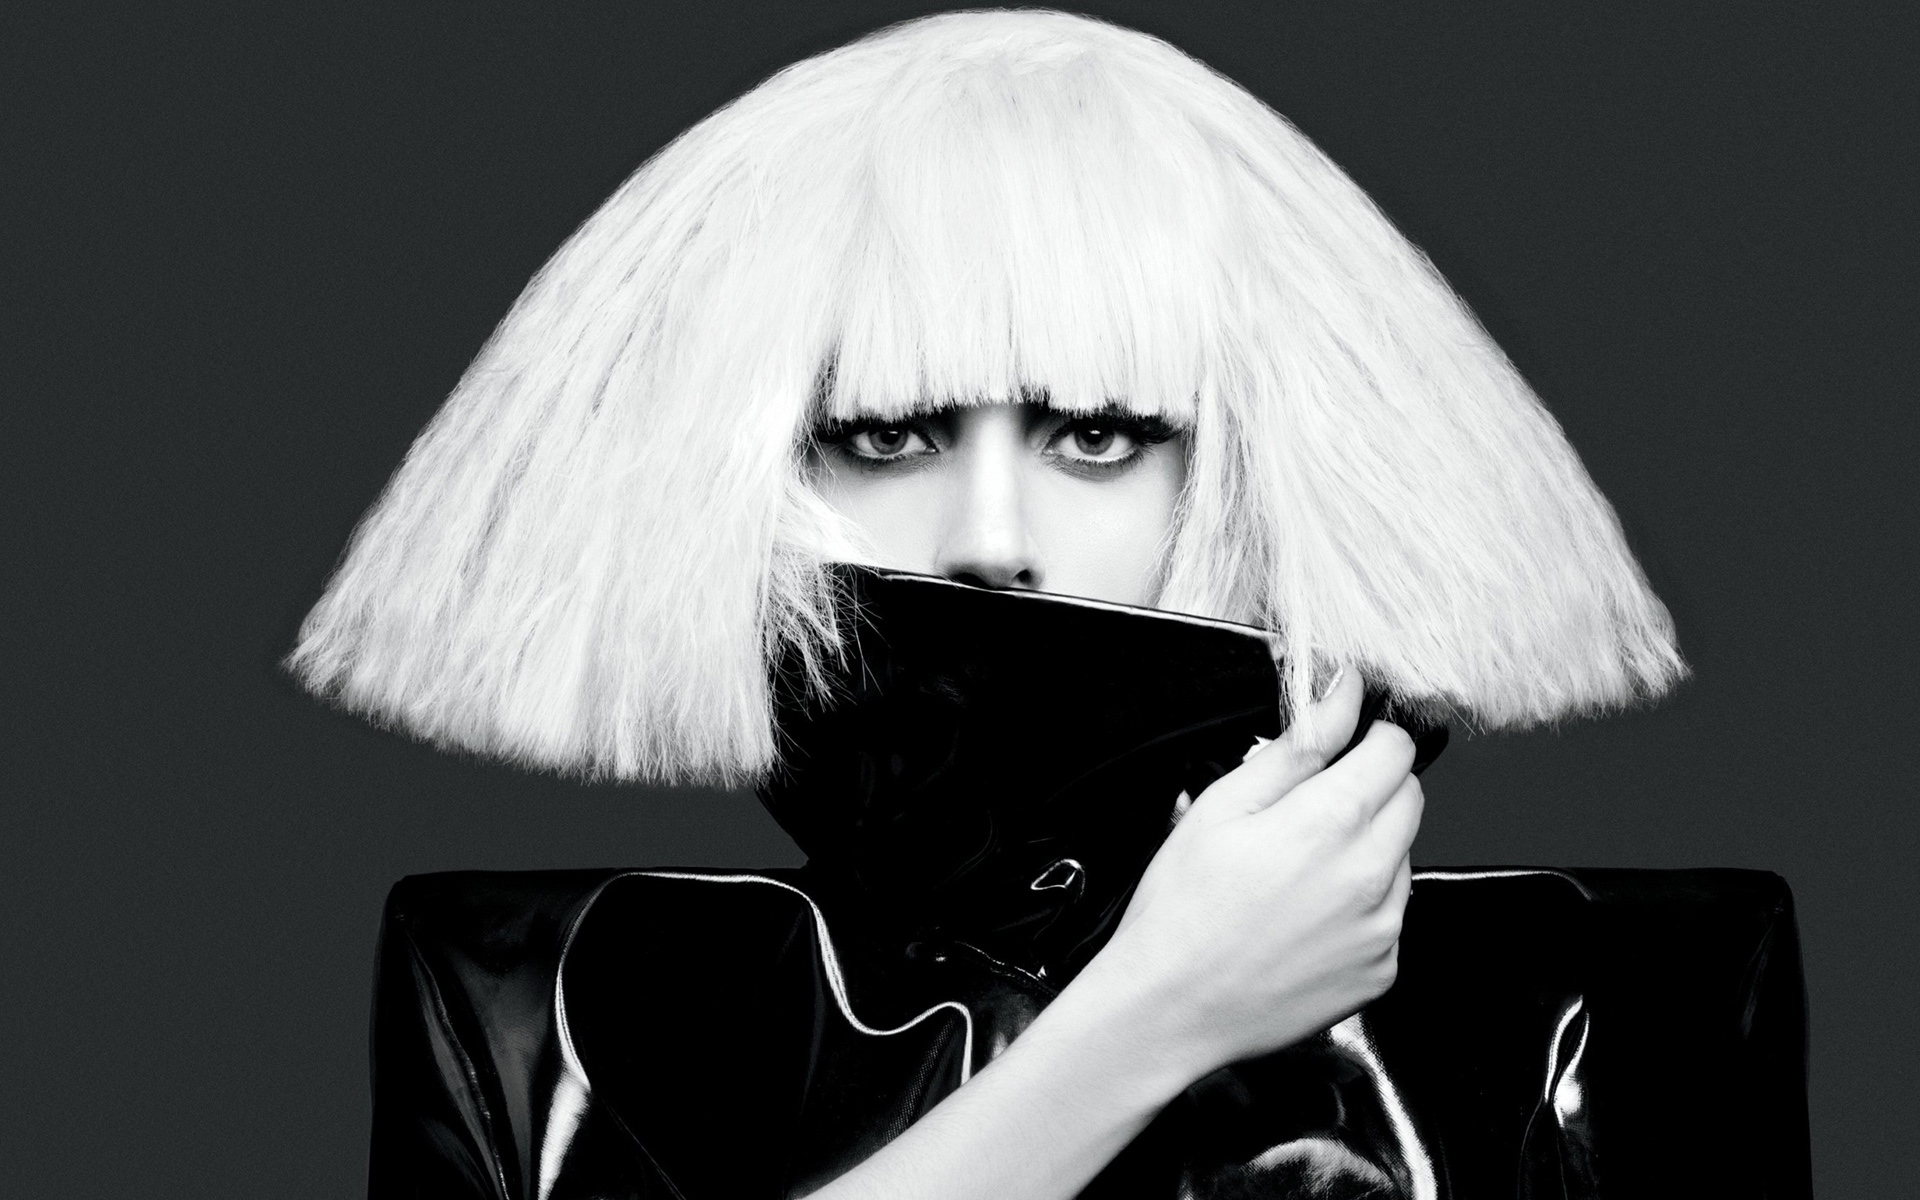 Hairstyle singer Lady Gaga